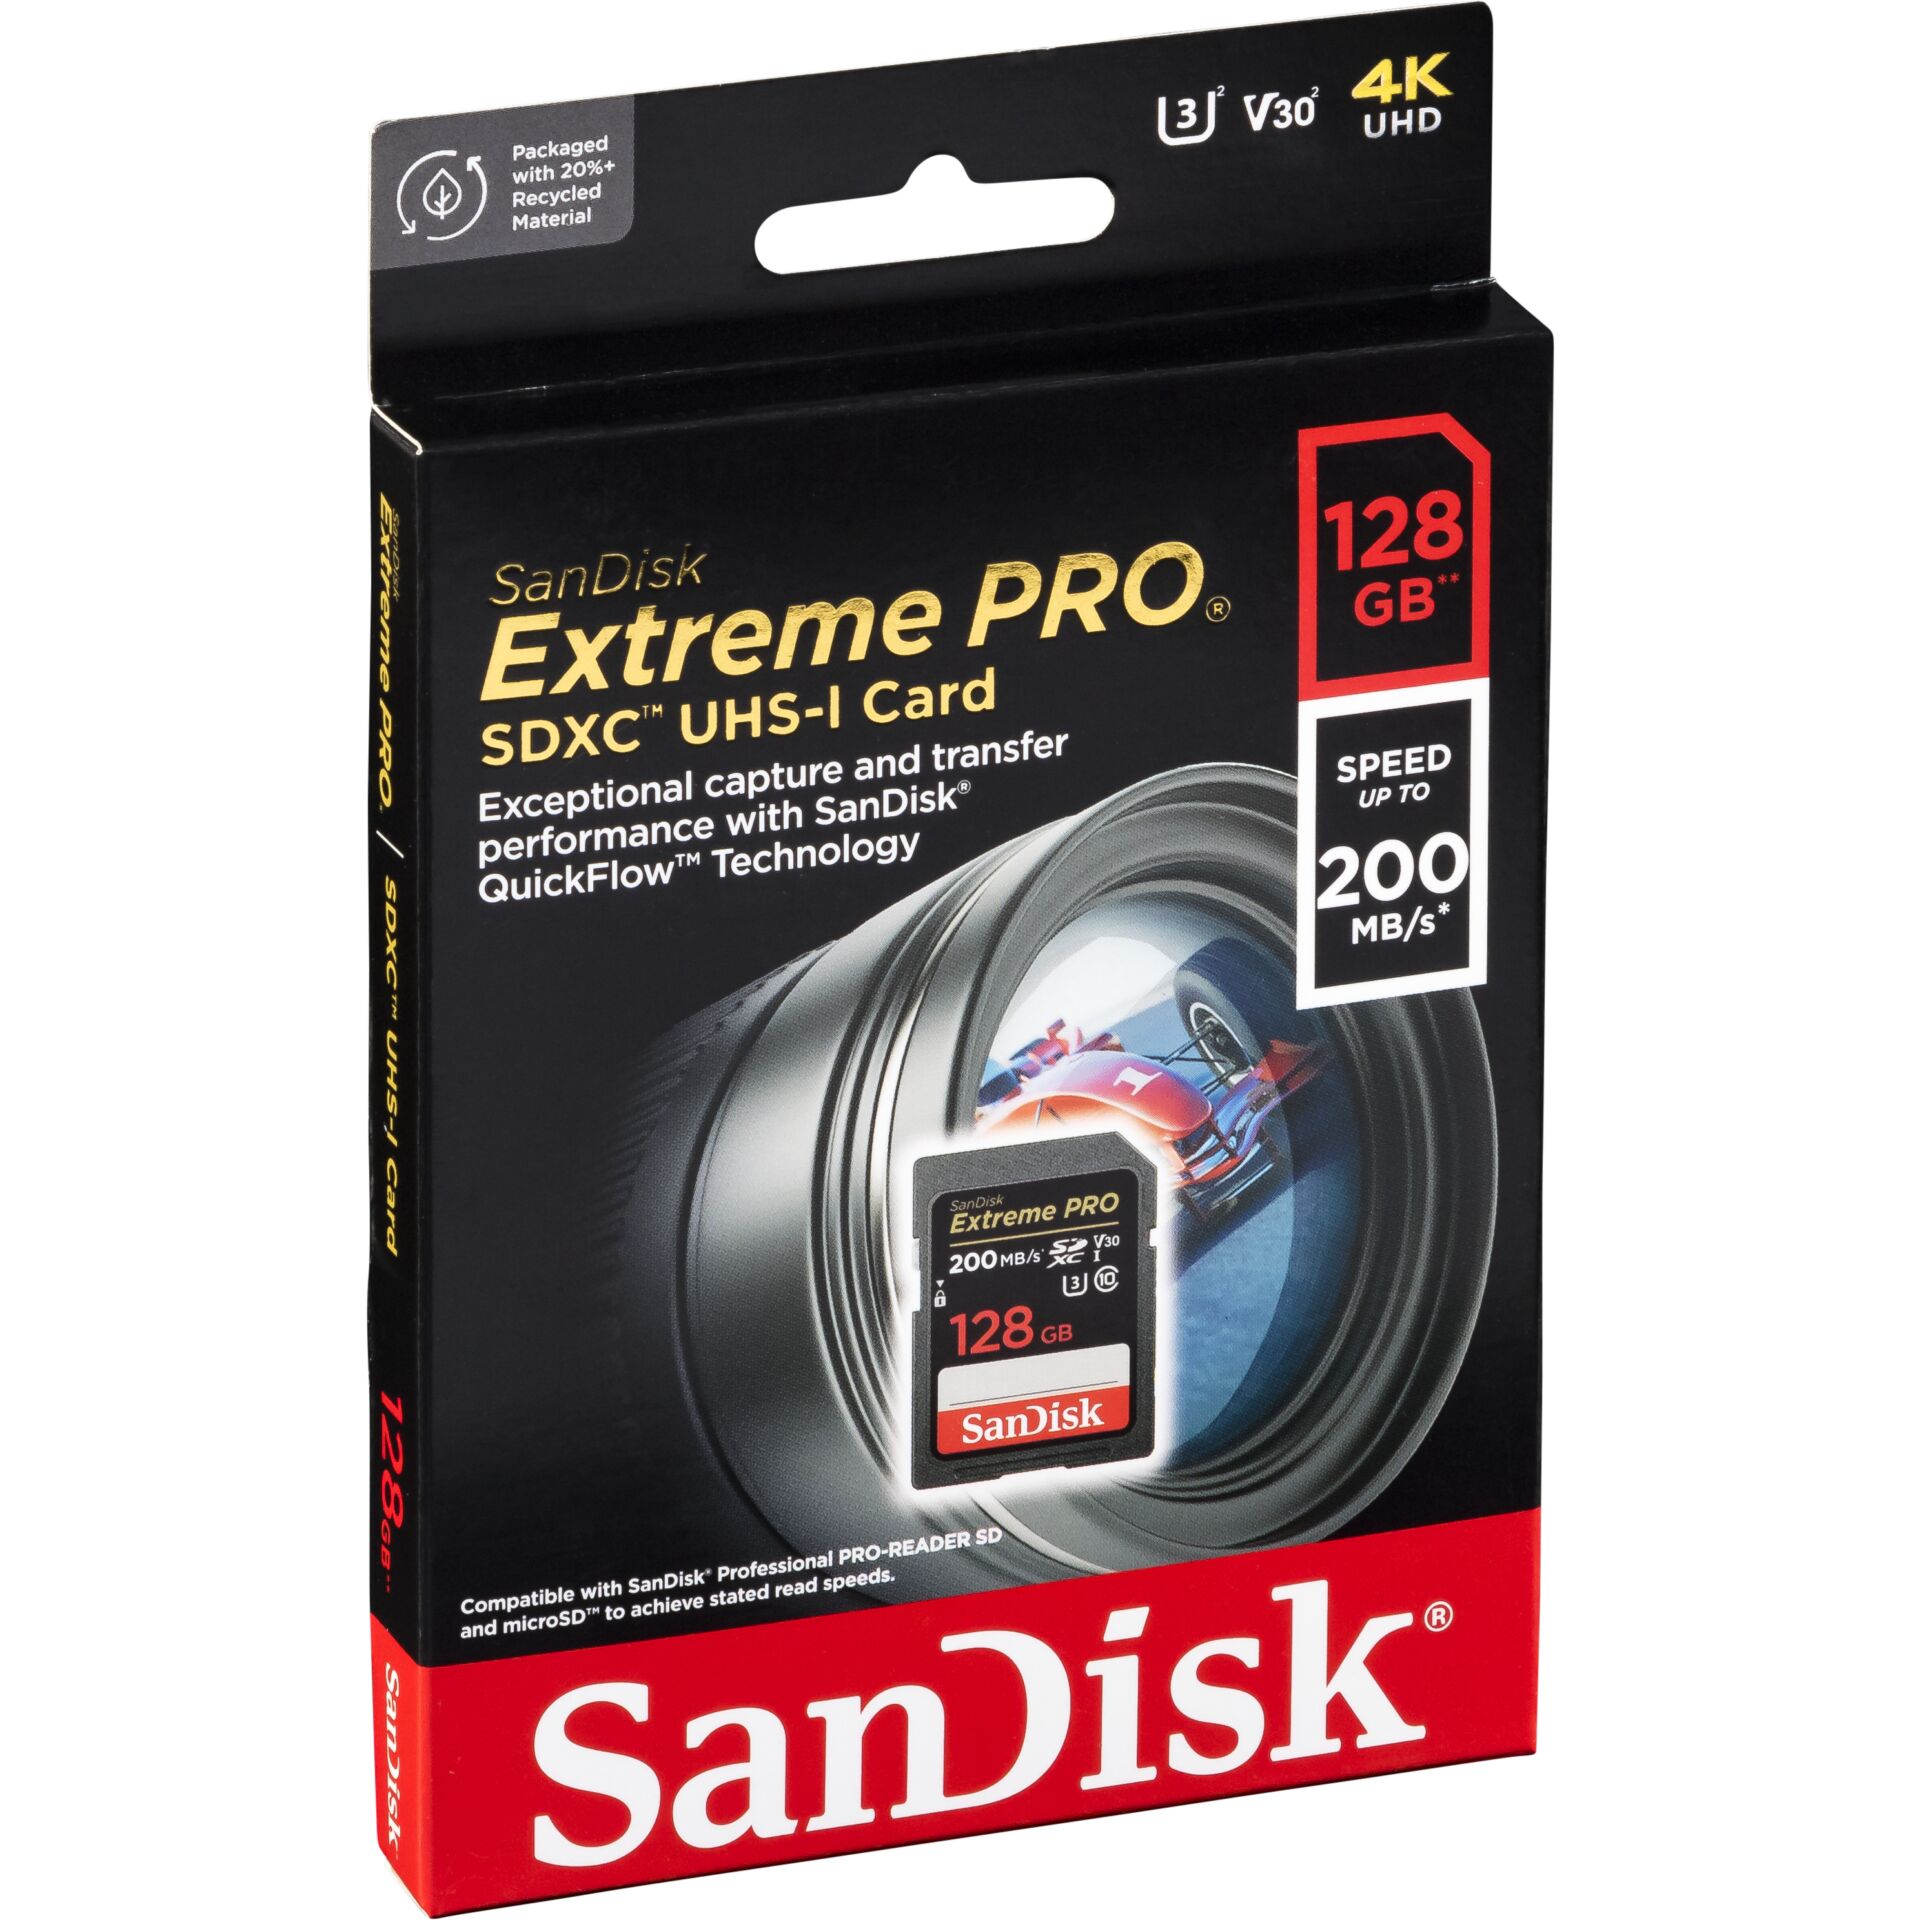 128 GB SanDisk Extreme PRO SDXC Speicherkarte, lesen: 200MB/s, schreiben: 90MB/s